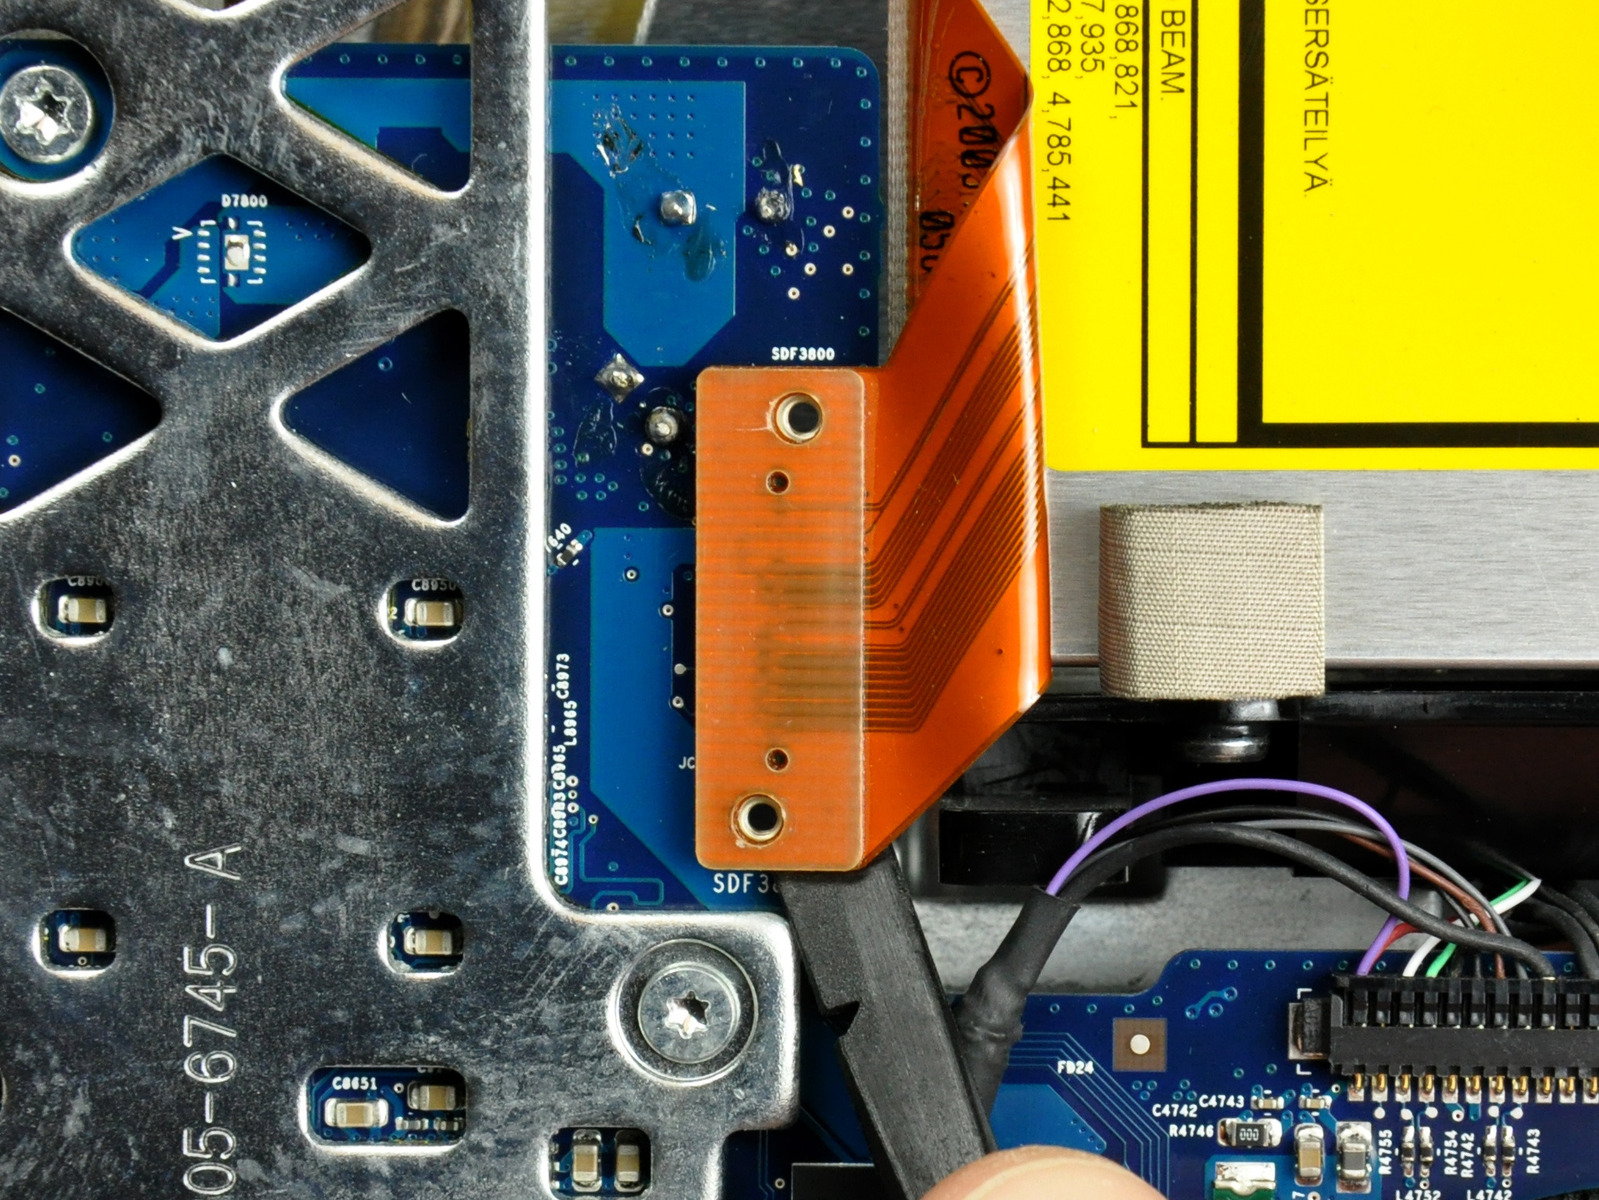 Adım 19 mantık tahtası kapalı optik sürücü şerit kablo konektörü gözetlemek için bir spudger düz ucunu kullanın. konnektörü üst veya alt gelen meraklı zaman bağlayıcı en kolay çıkarılır.